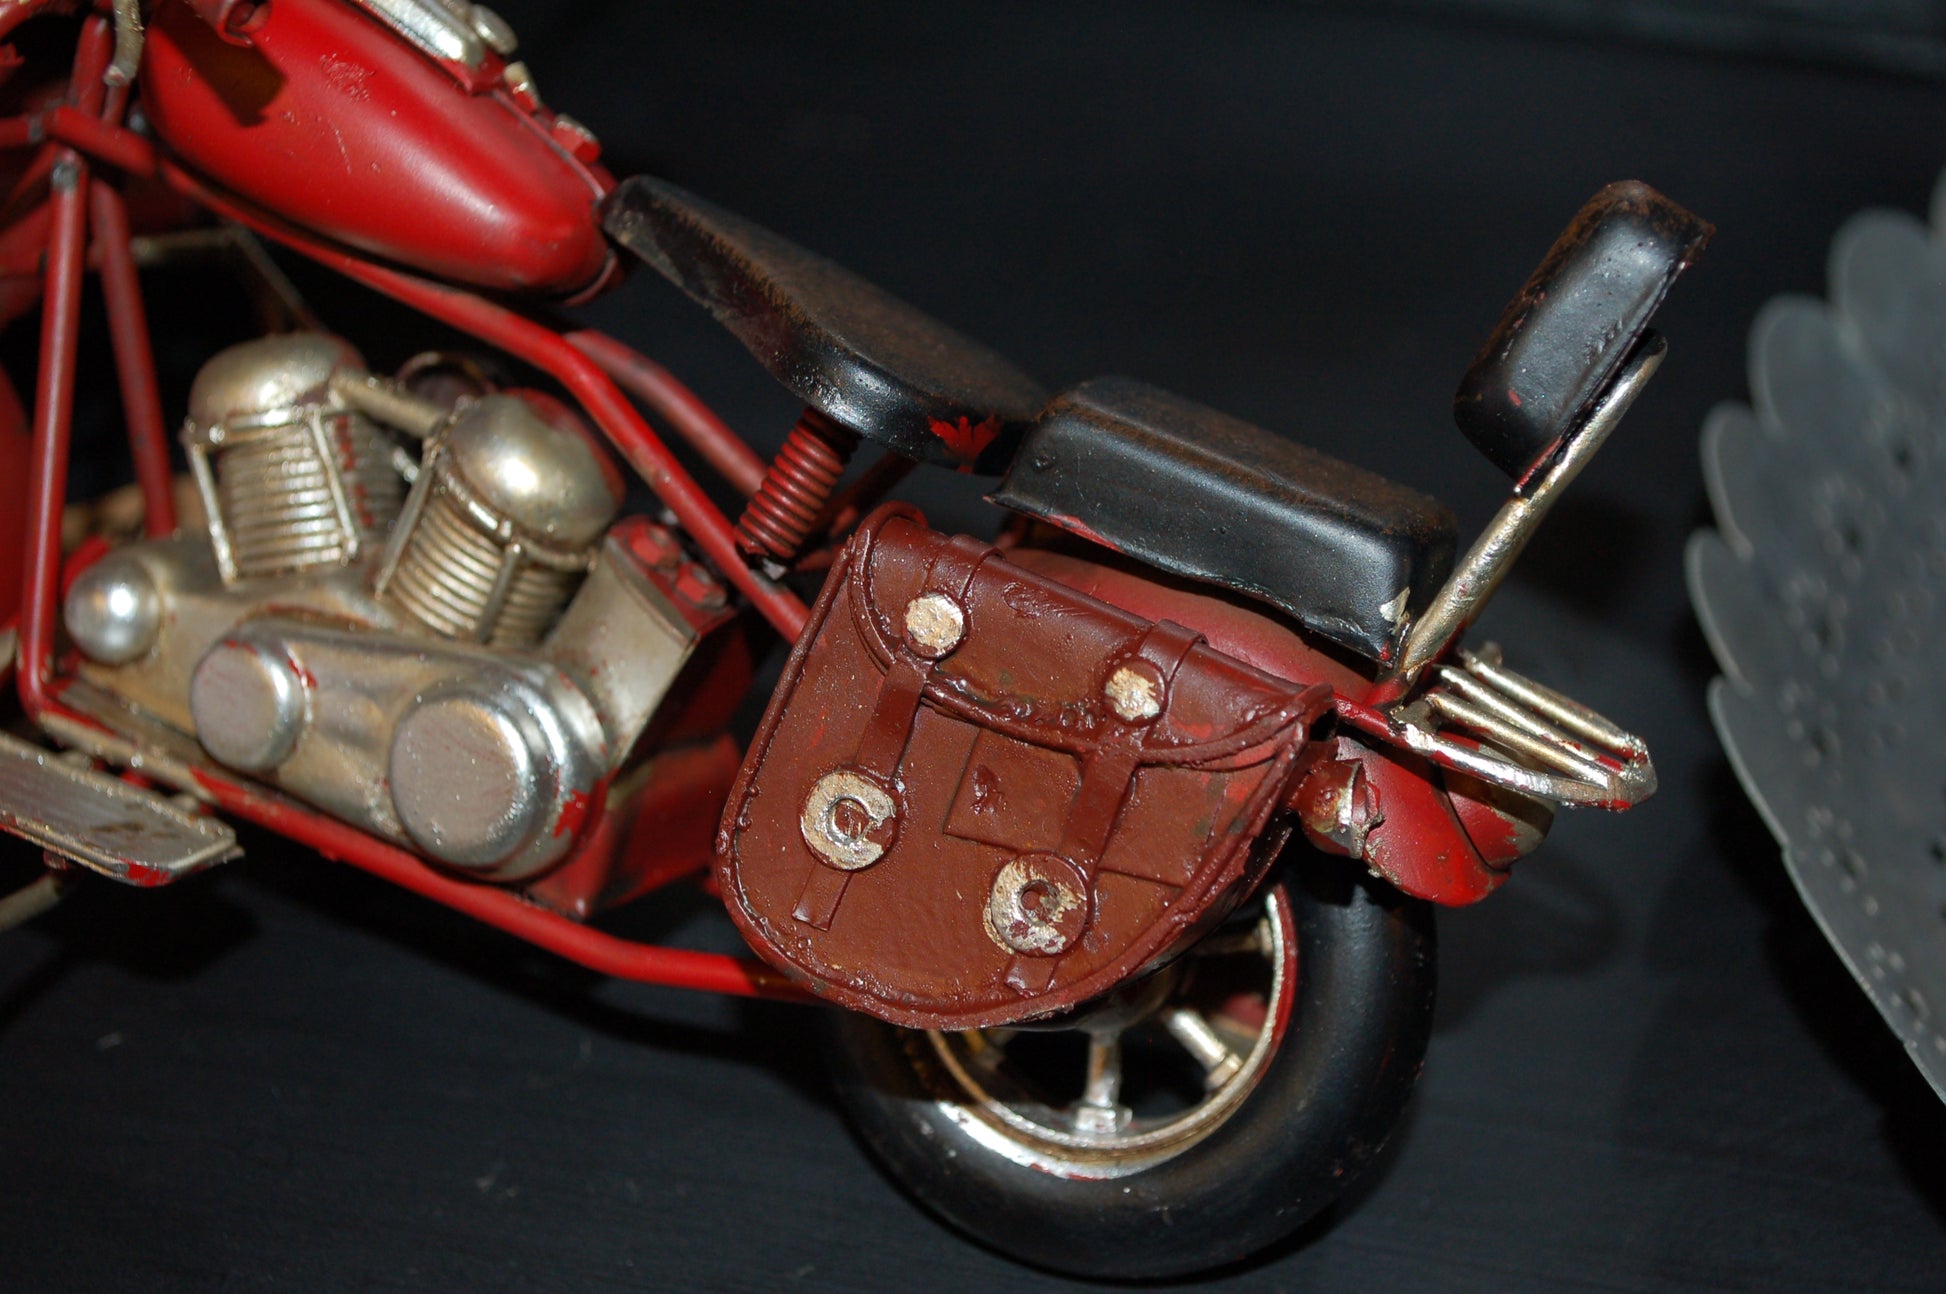 Vem kan motstå den coola motorcykeln? Perfekt present till den motor tokiga.  Mått: L 19 cm x H 12 cm x D 7,5 cm  Material: Metall/Plåt  Färg: Röd  OBS: Dekoration, ingen leksak.